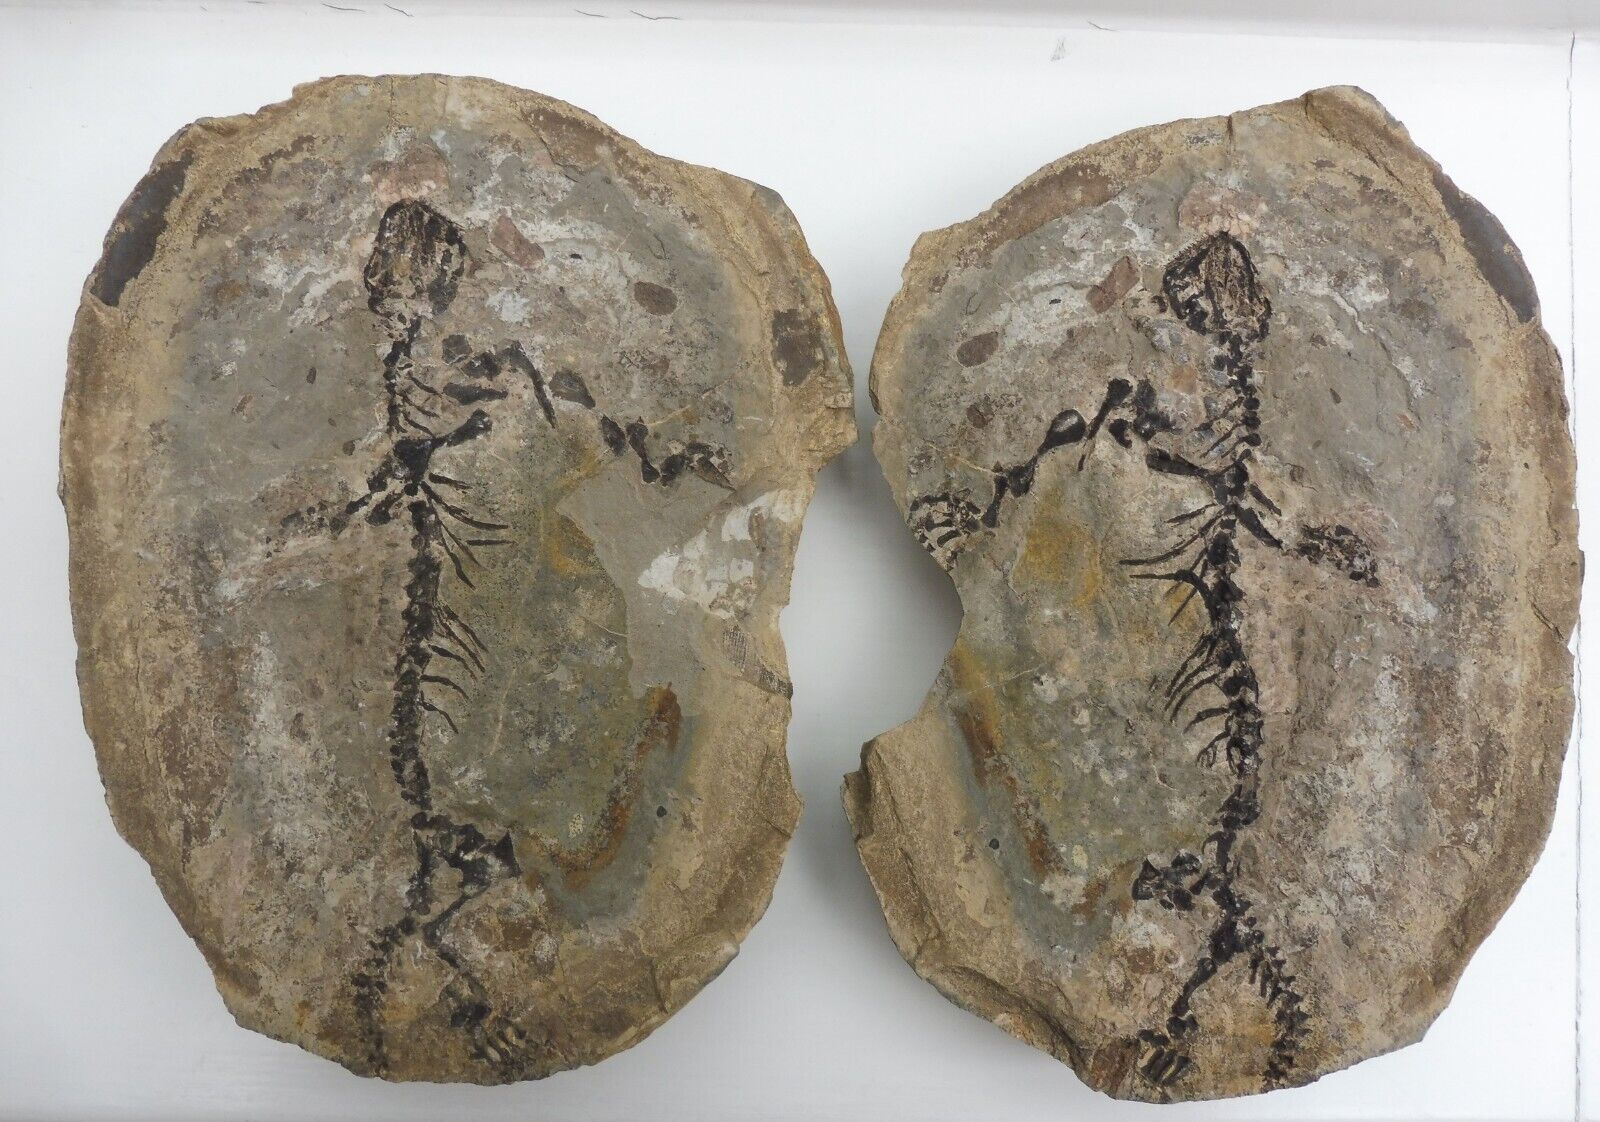 Parareptile (Barasaurus besairiei) 23.5 cm - Madagascar - Permian / Triassic